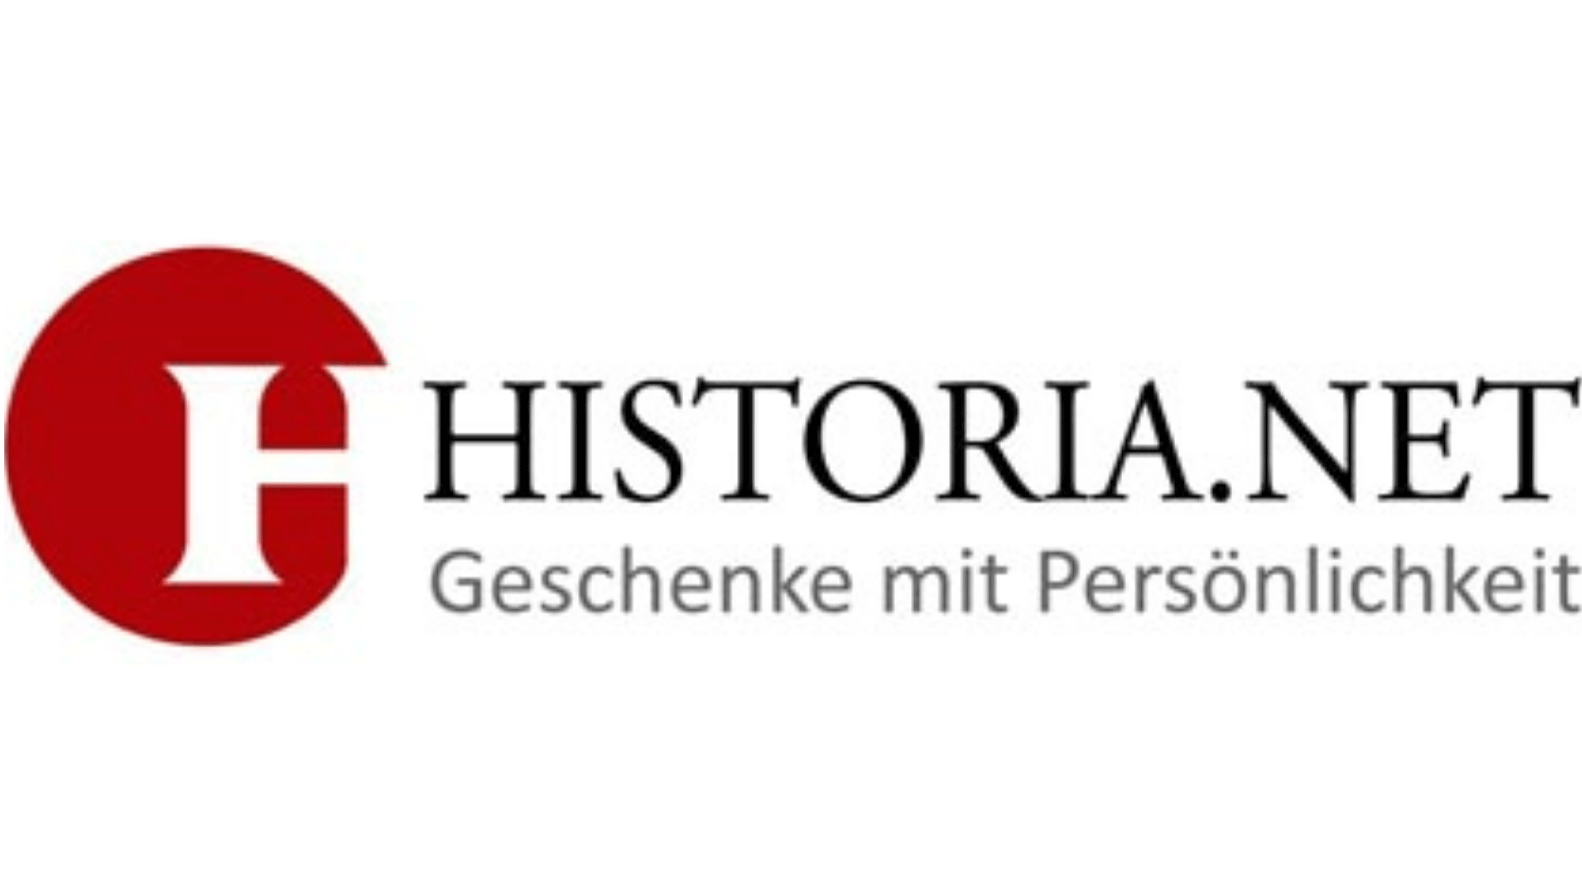 Historia.net: 10 Euro & 5 Prozent Gutschein